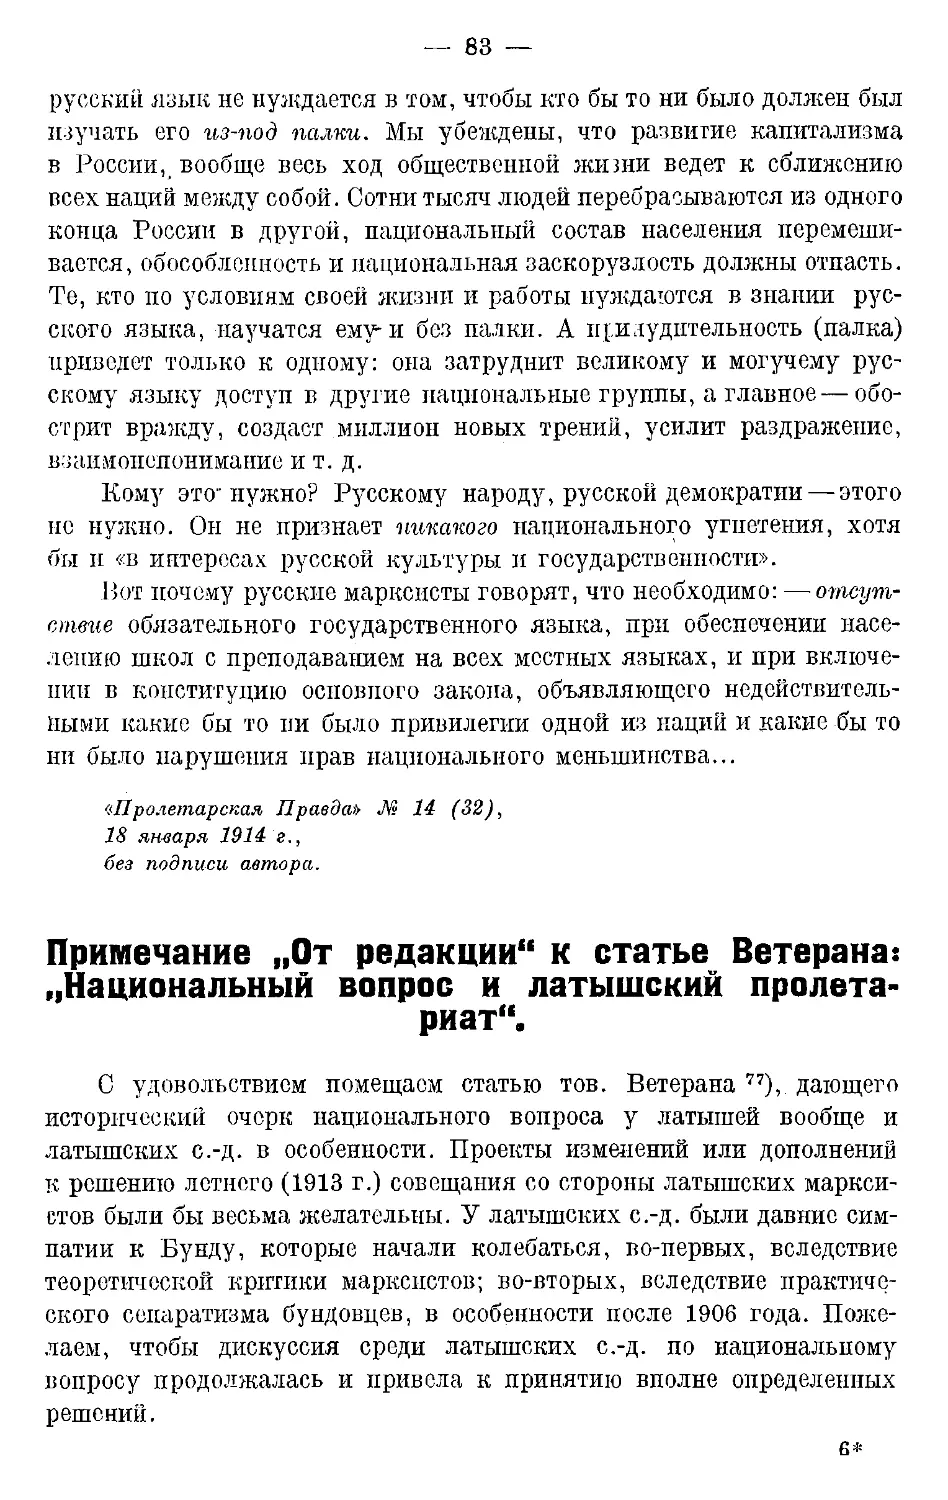 Примечание «От редакции» к статье Ветерана: «Национальный вопрос и латышский пролетариат».